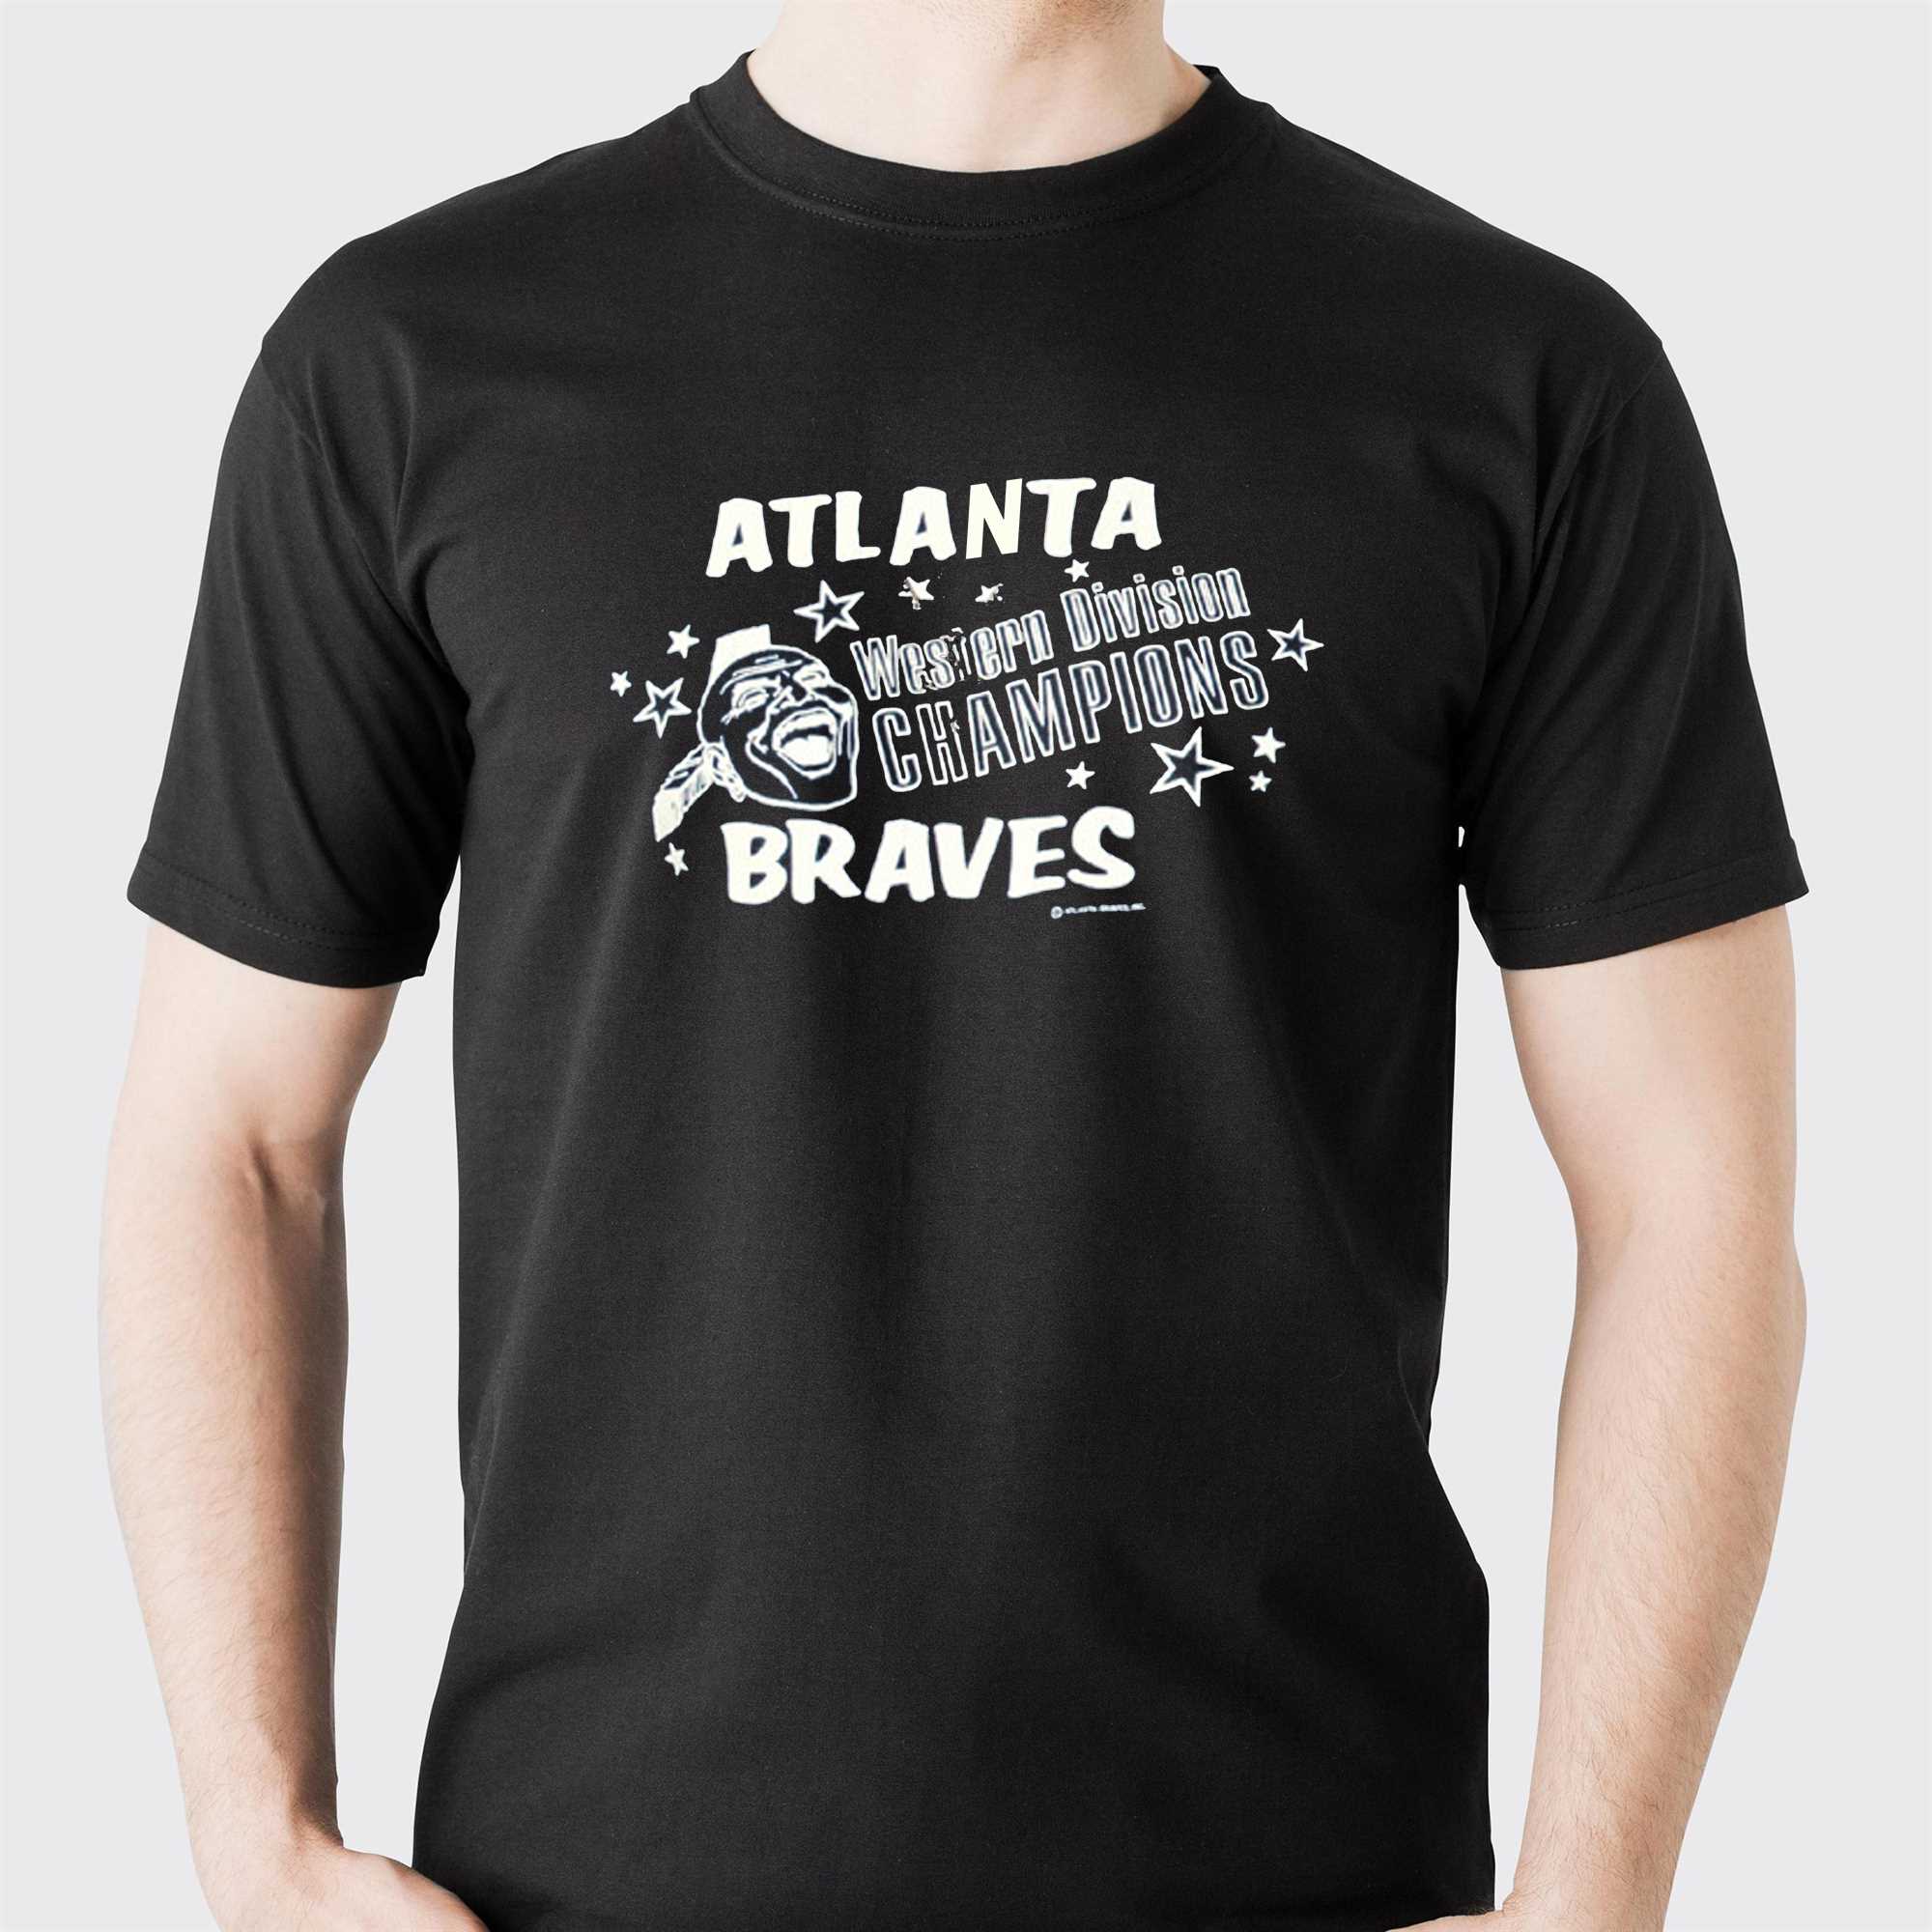 Atlanta Braves Western Division Champion Shirt - Shibtee Clothing